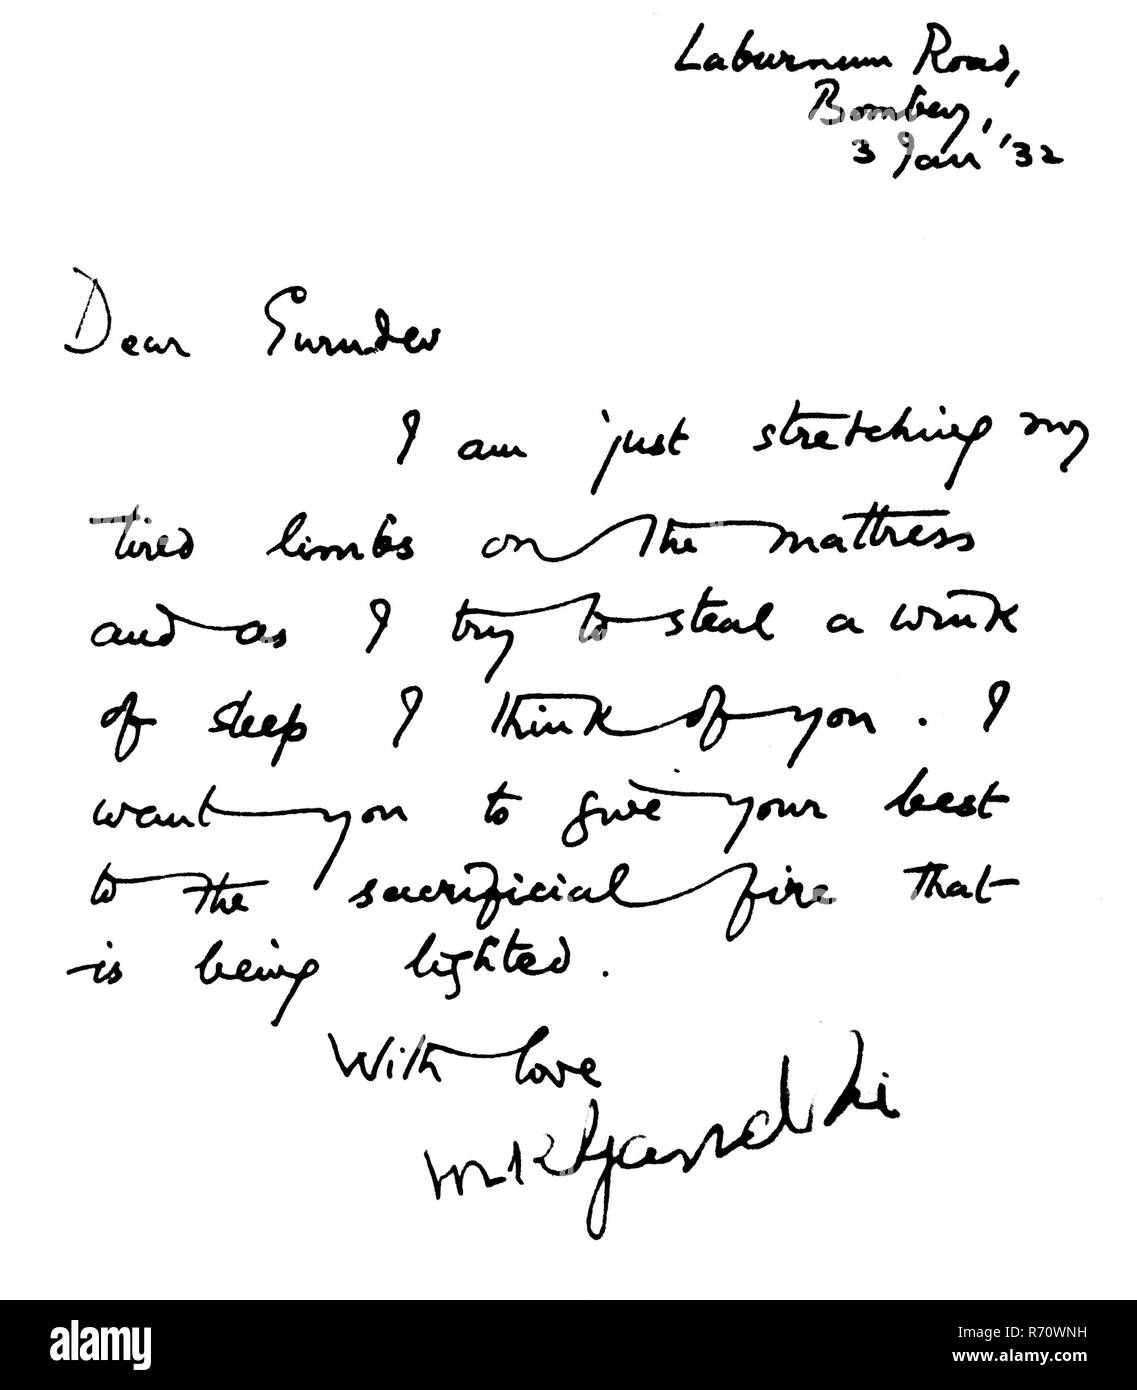 Mahatma Gandhi écrit à la main lettre en anglais à Rabindranath Tagore, Mani Bhavan, Laburnum Road, Bombay, Mumbai, Inde, le 3 janvier 1932, ancienne image du millésime 1900 Banque D'Images